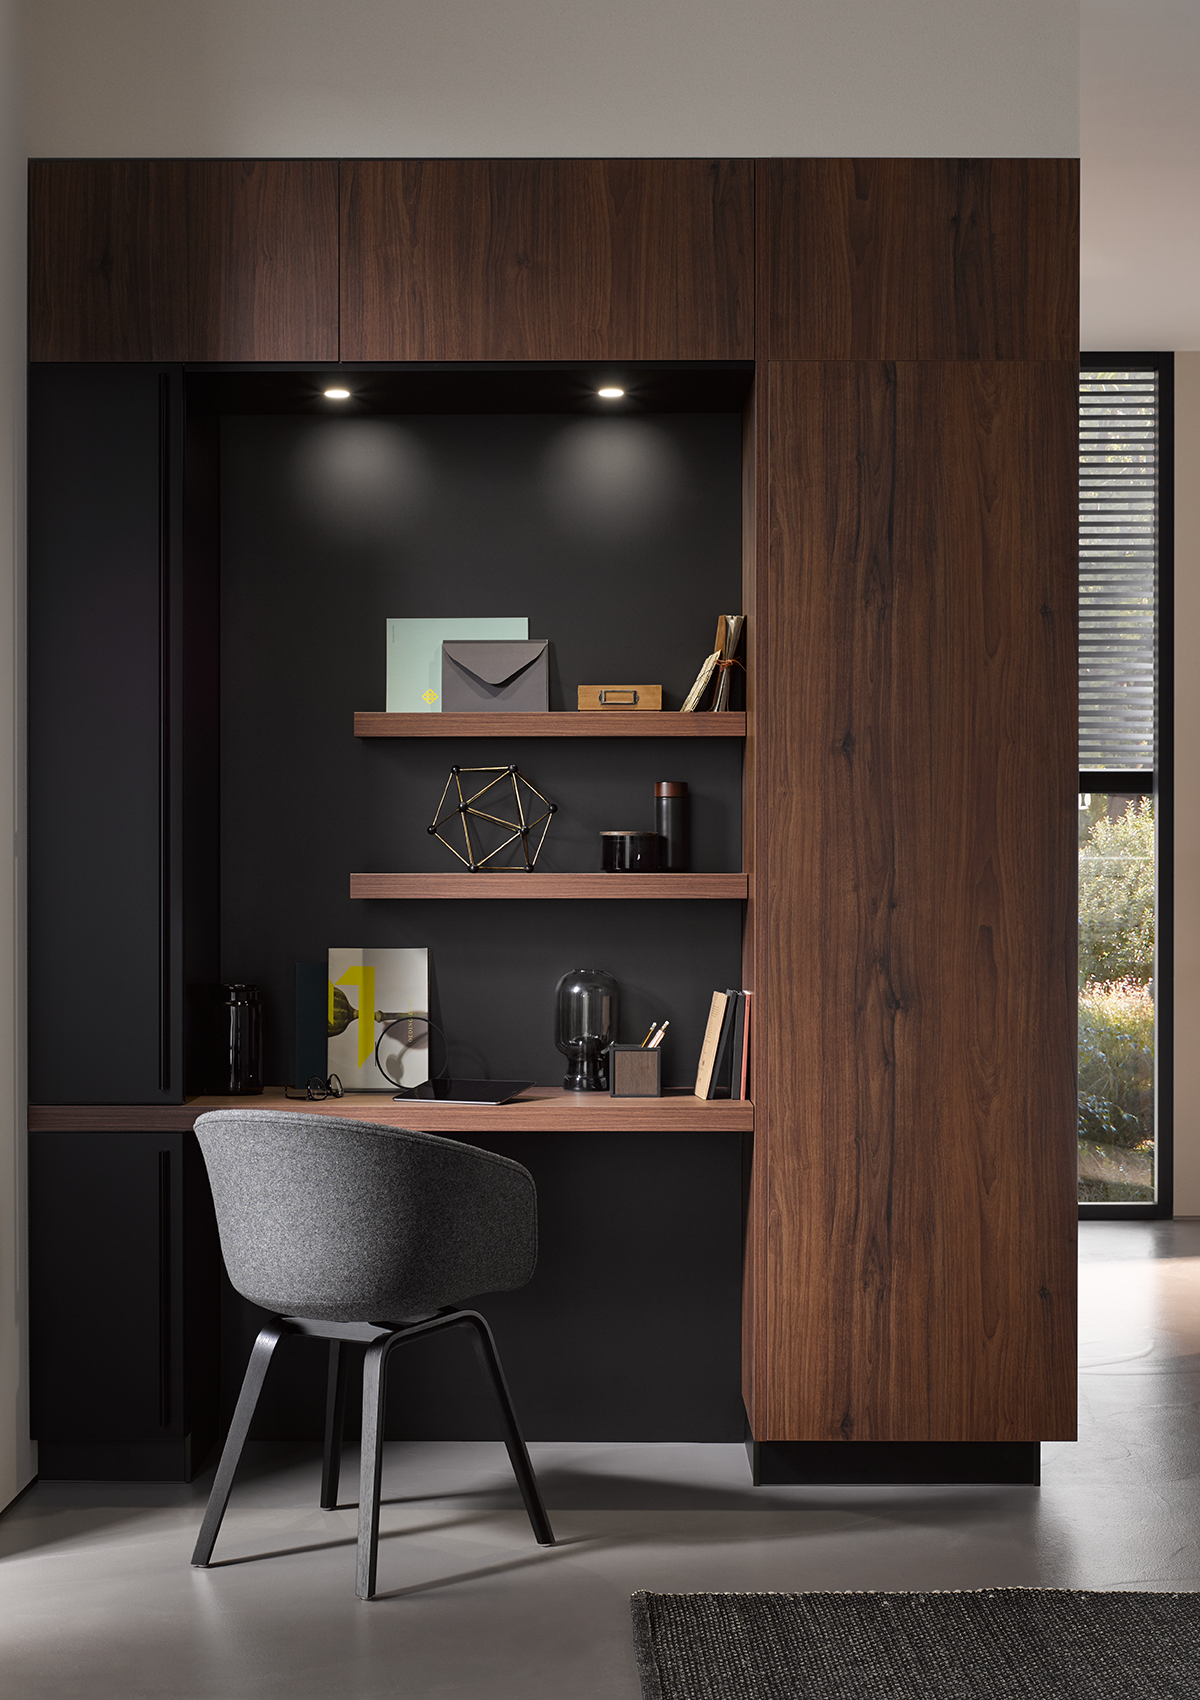 Arbeitsnische mit schwarzer Rückwand, Nussbaum-Tischplatte sowie passenden Regalen und integrierten Lichtspots.